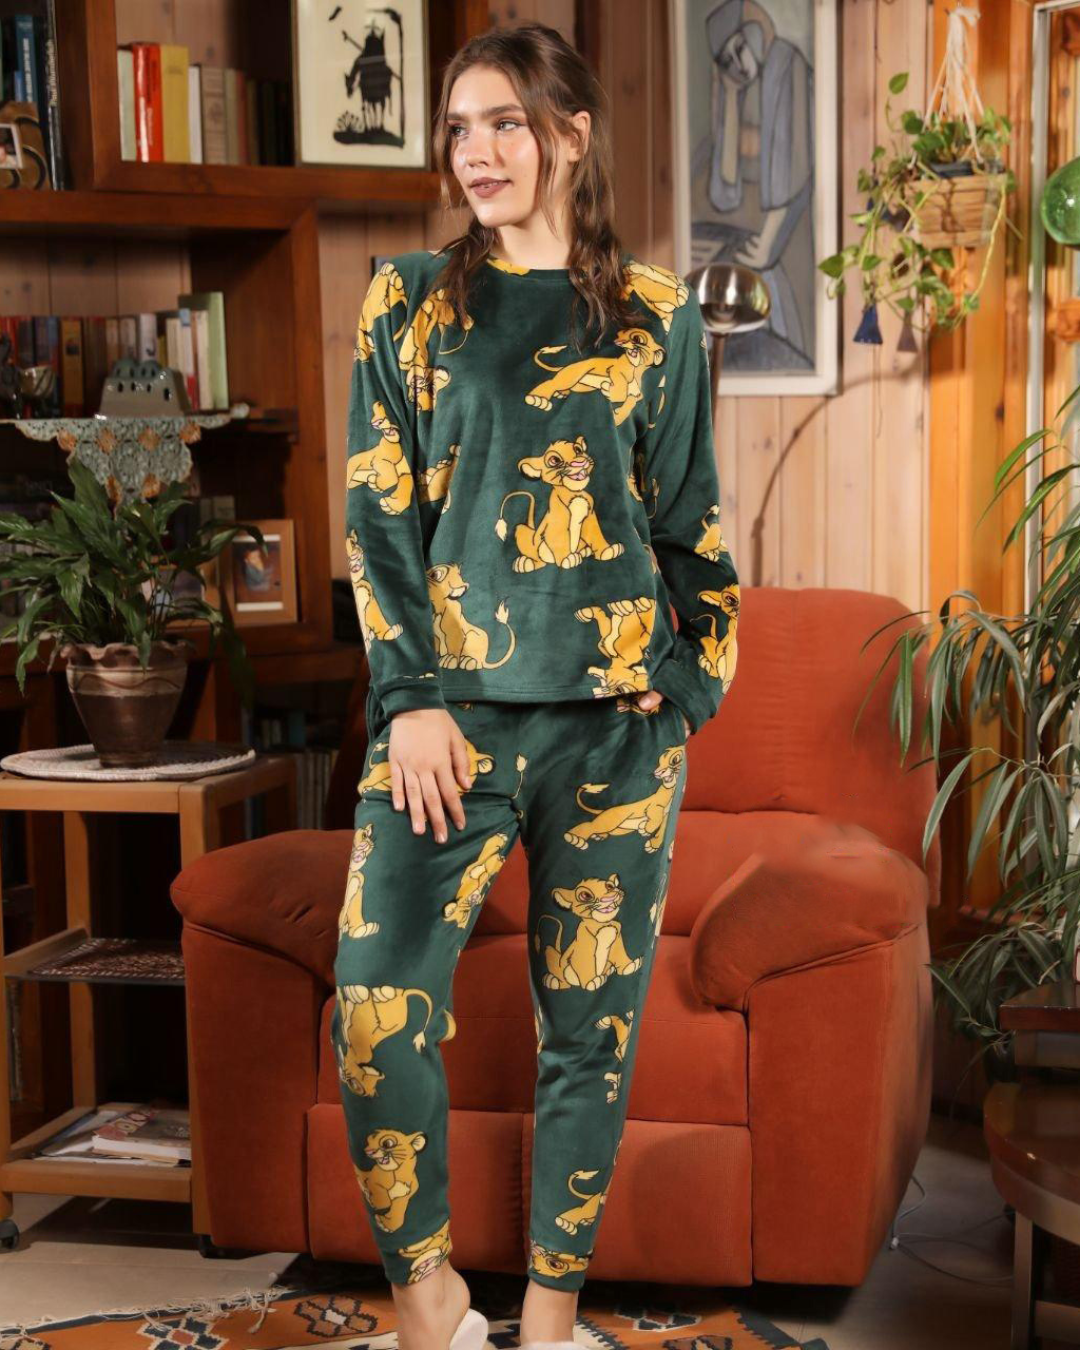 Women's pajamas printed with Simba